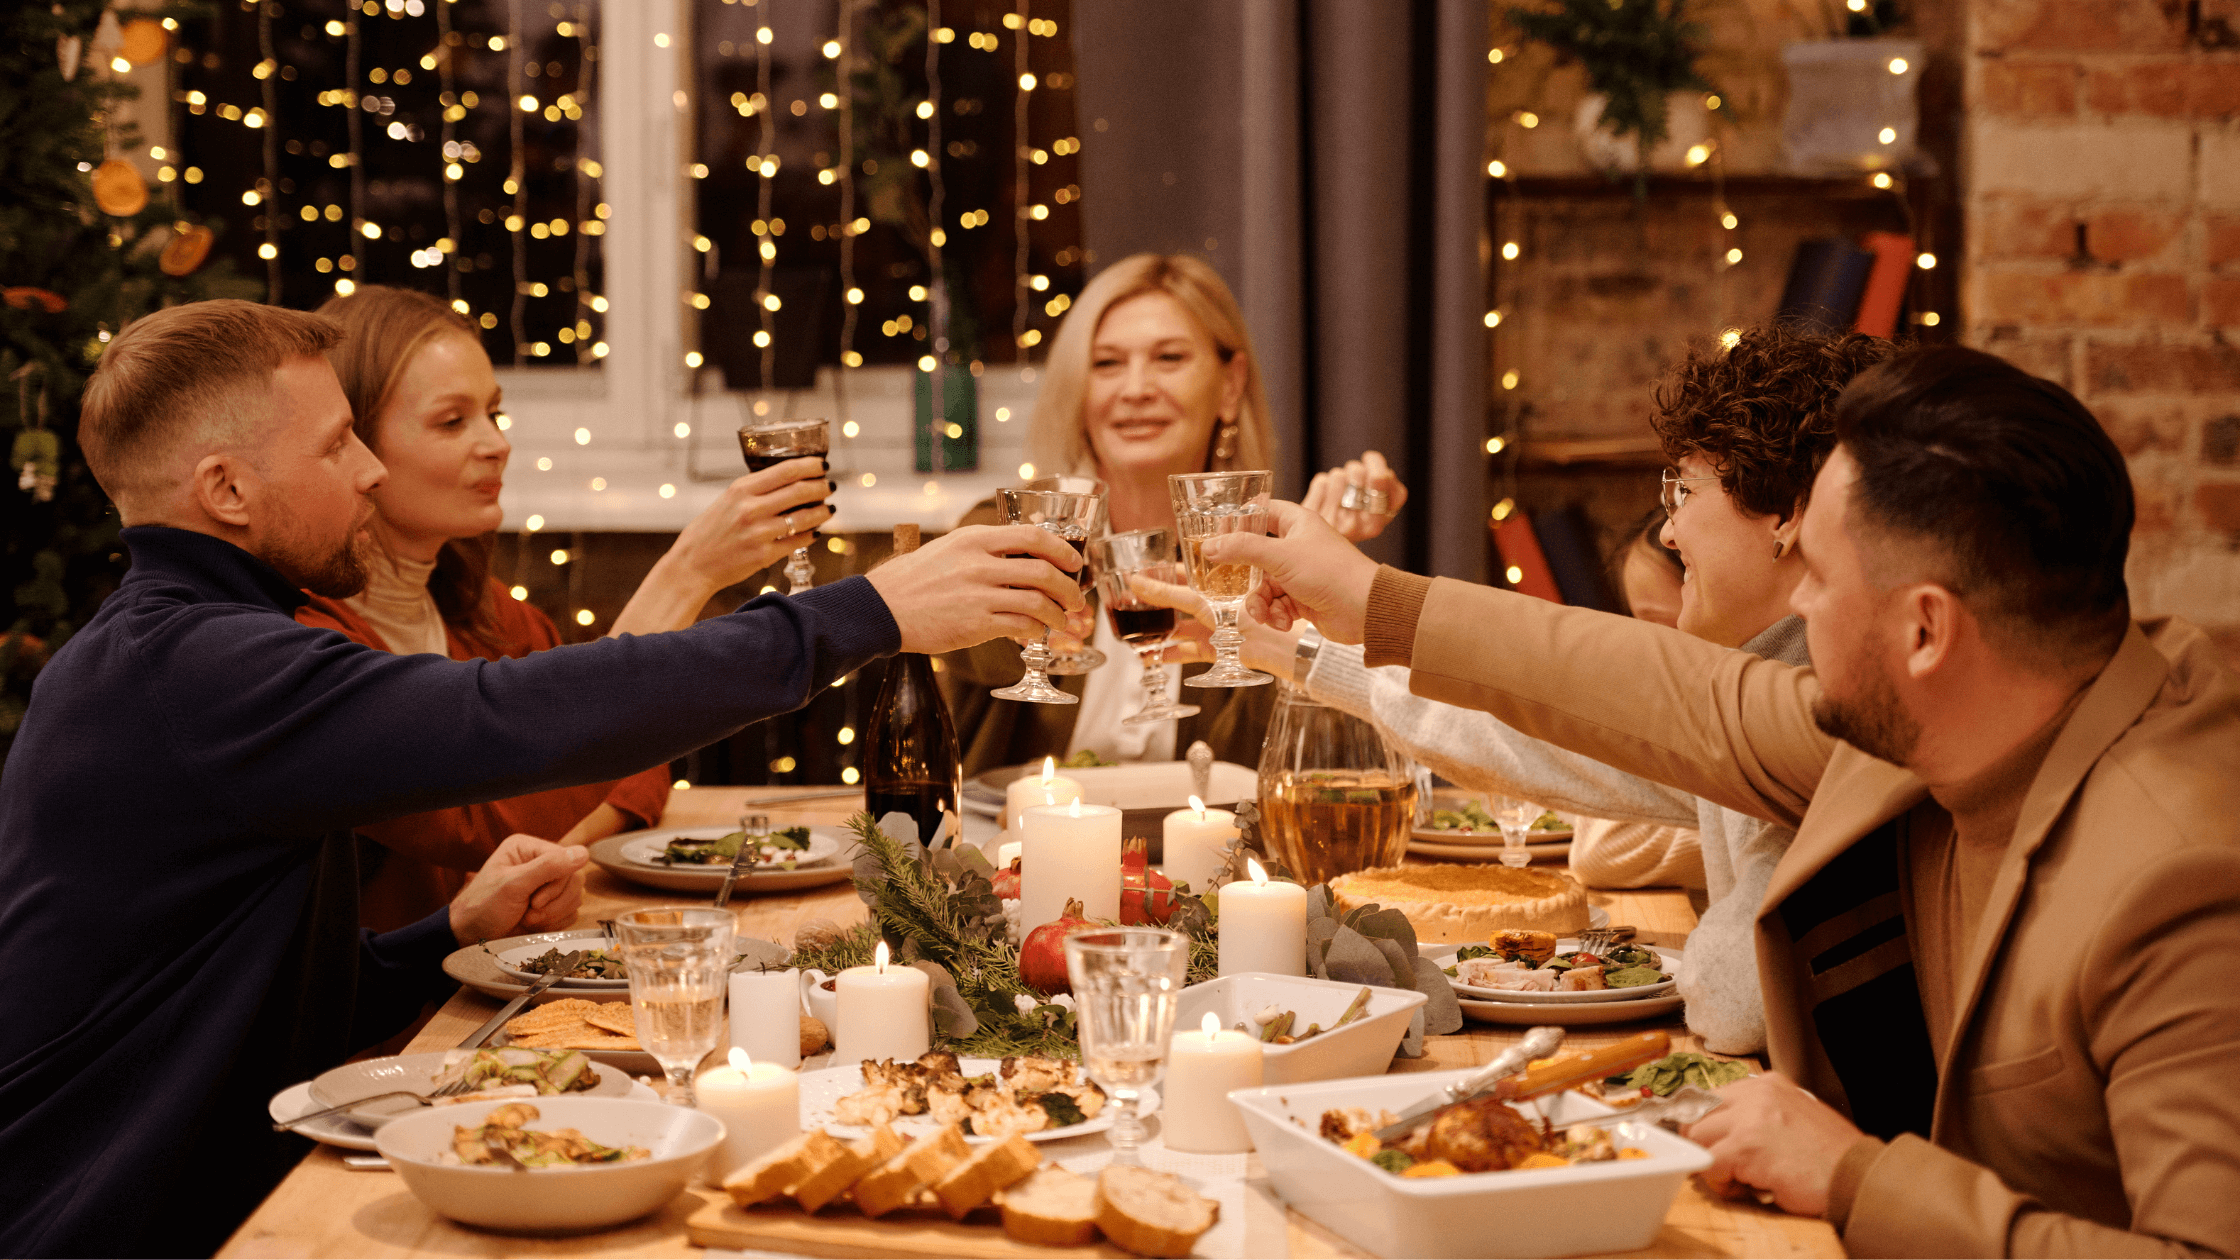 Convive tus fiestas decembrinas en familia y seres queridos